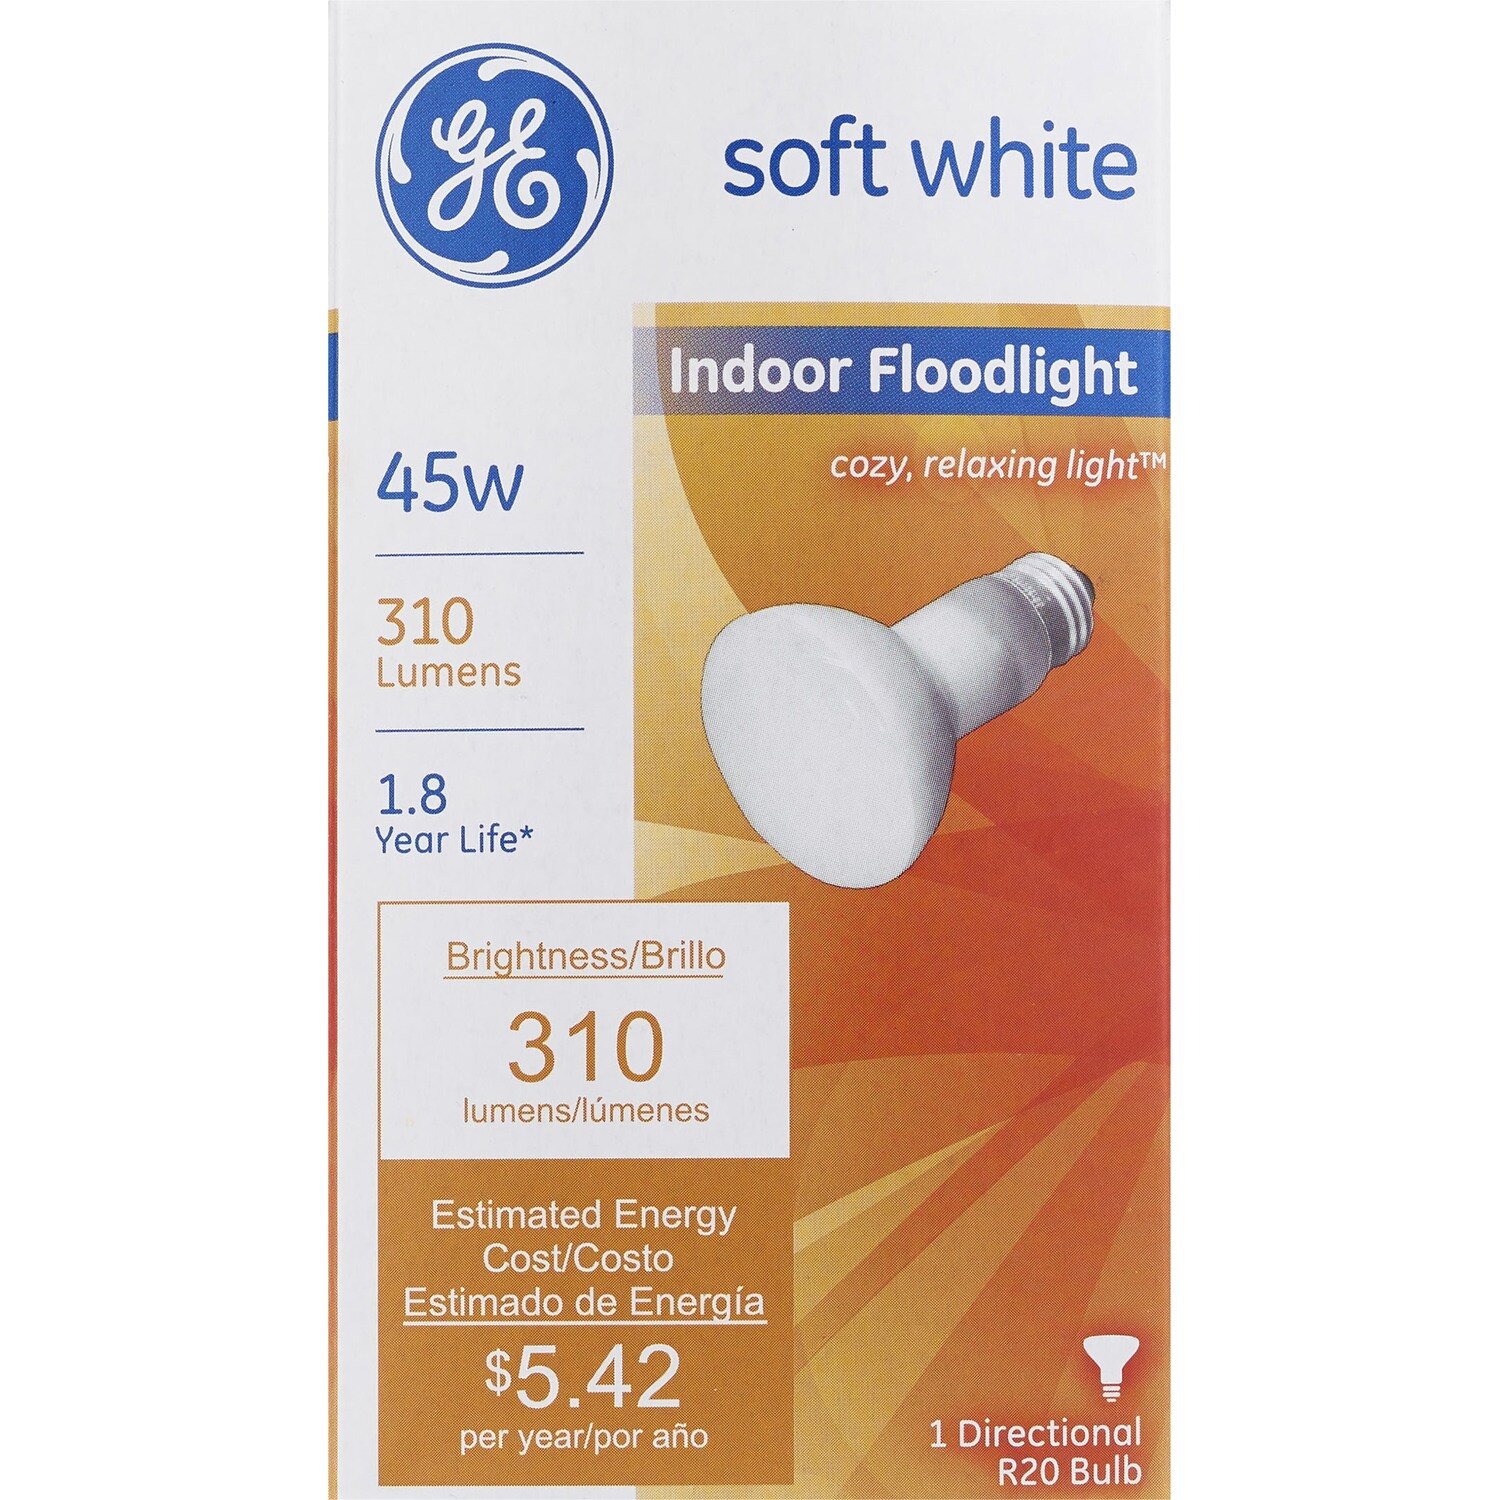 GE Soft White 45w R20 Indoor Floodlight